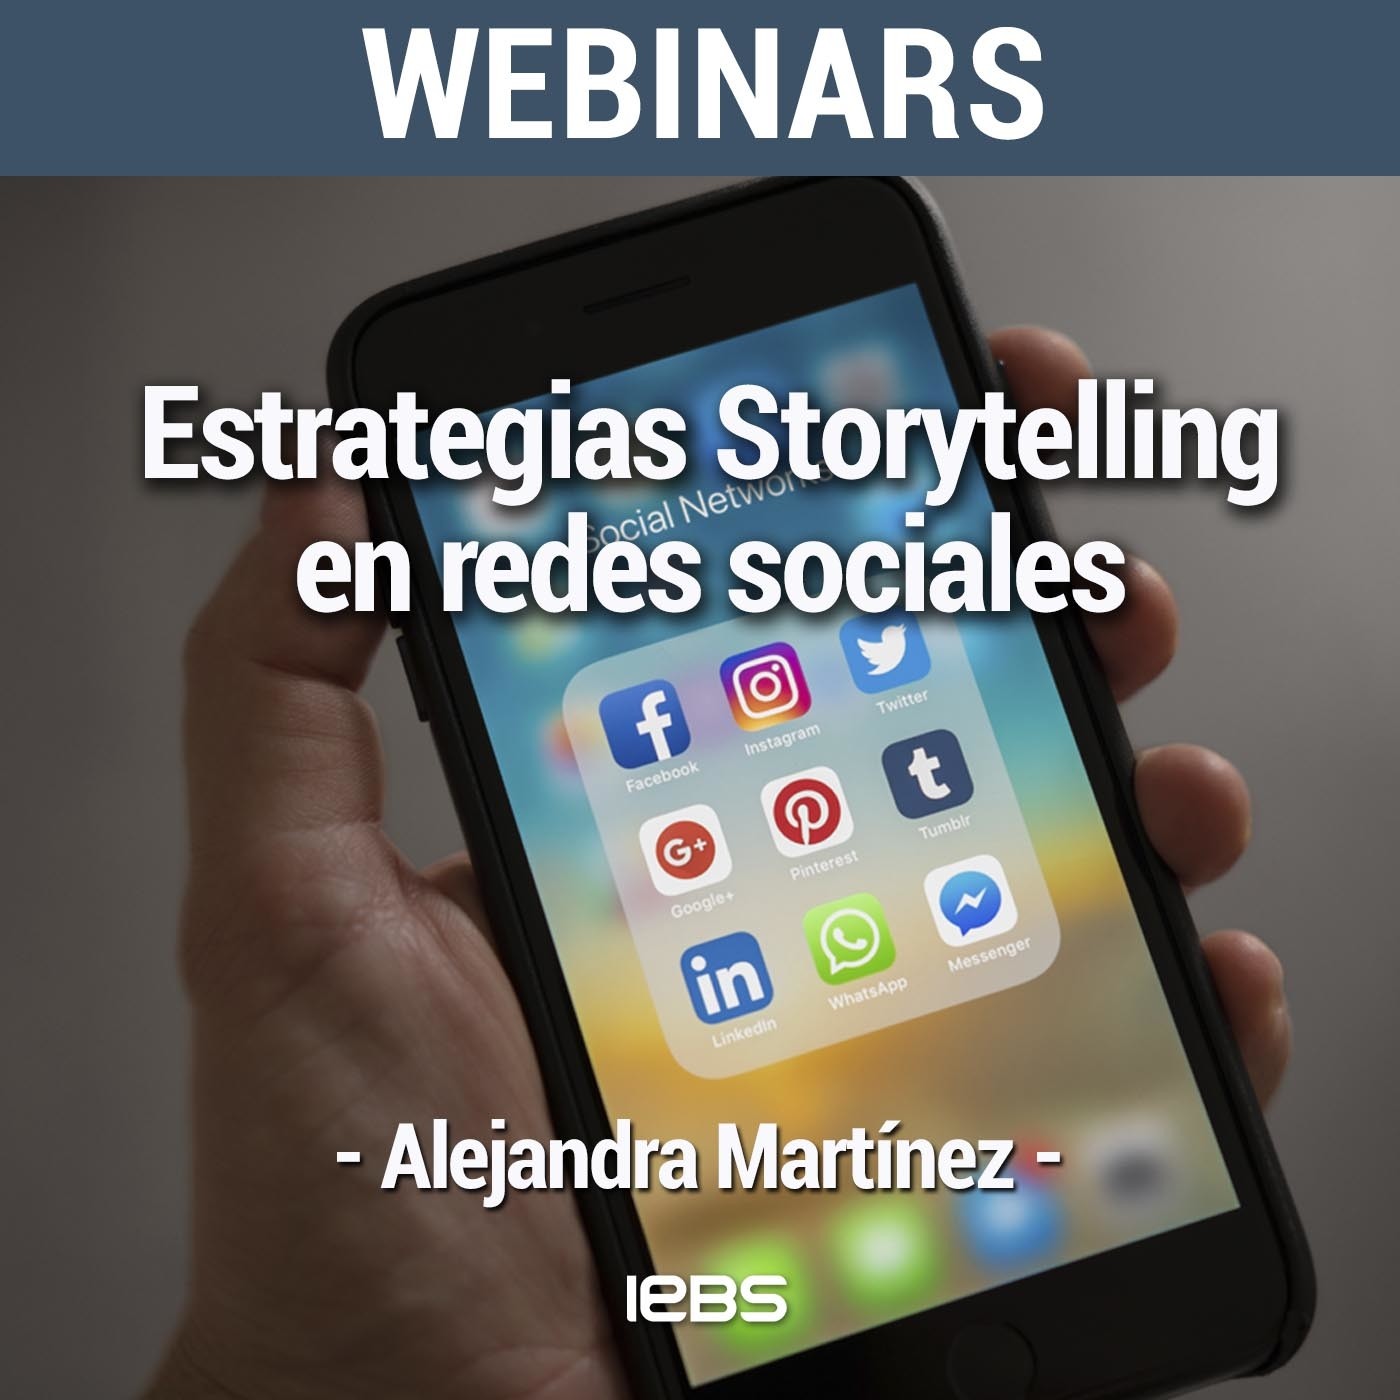 Webinar "Estrategias Storytelling en redes sociales" de Akademus from IEBS